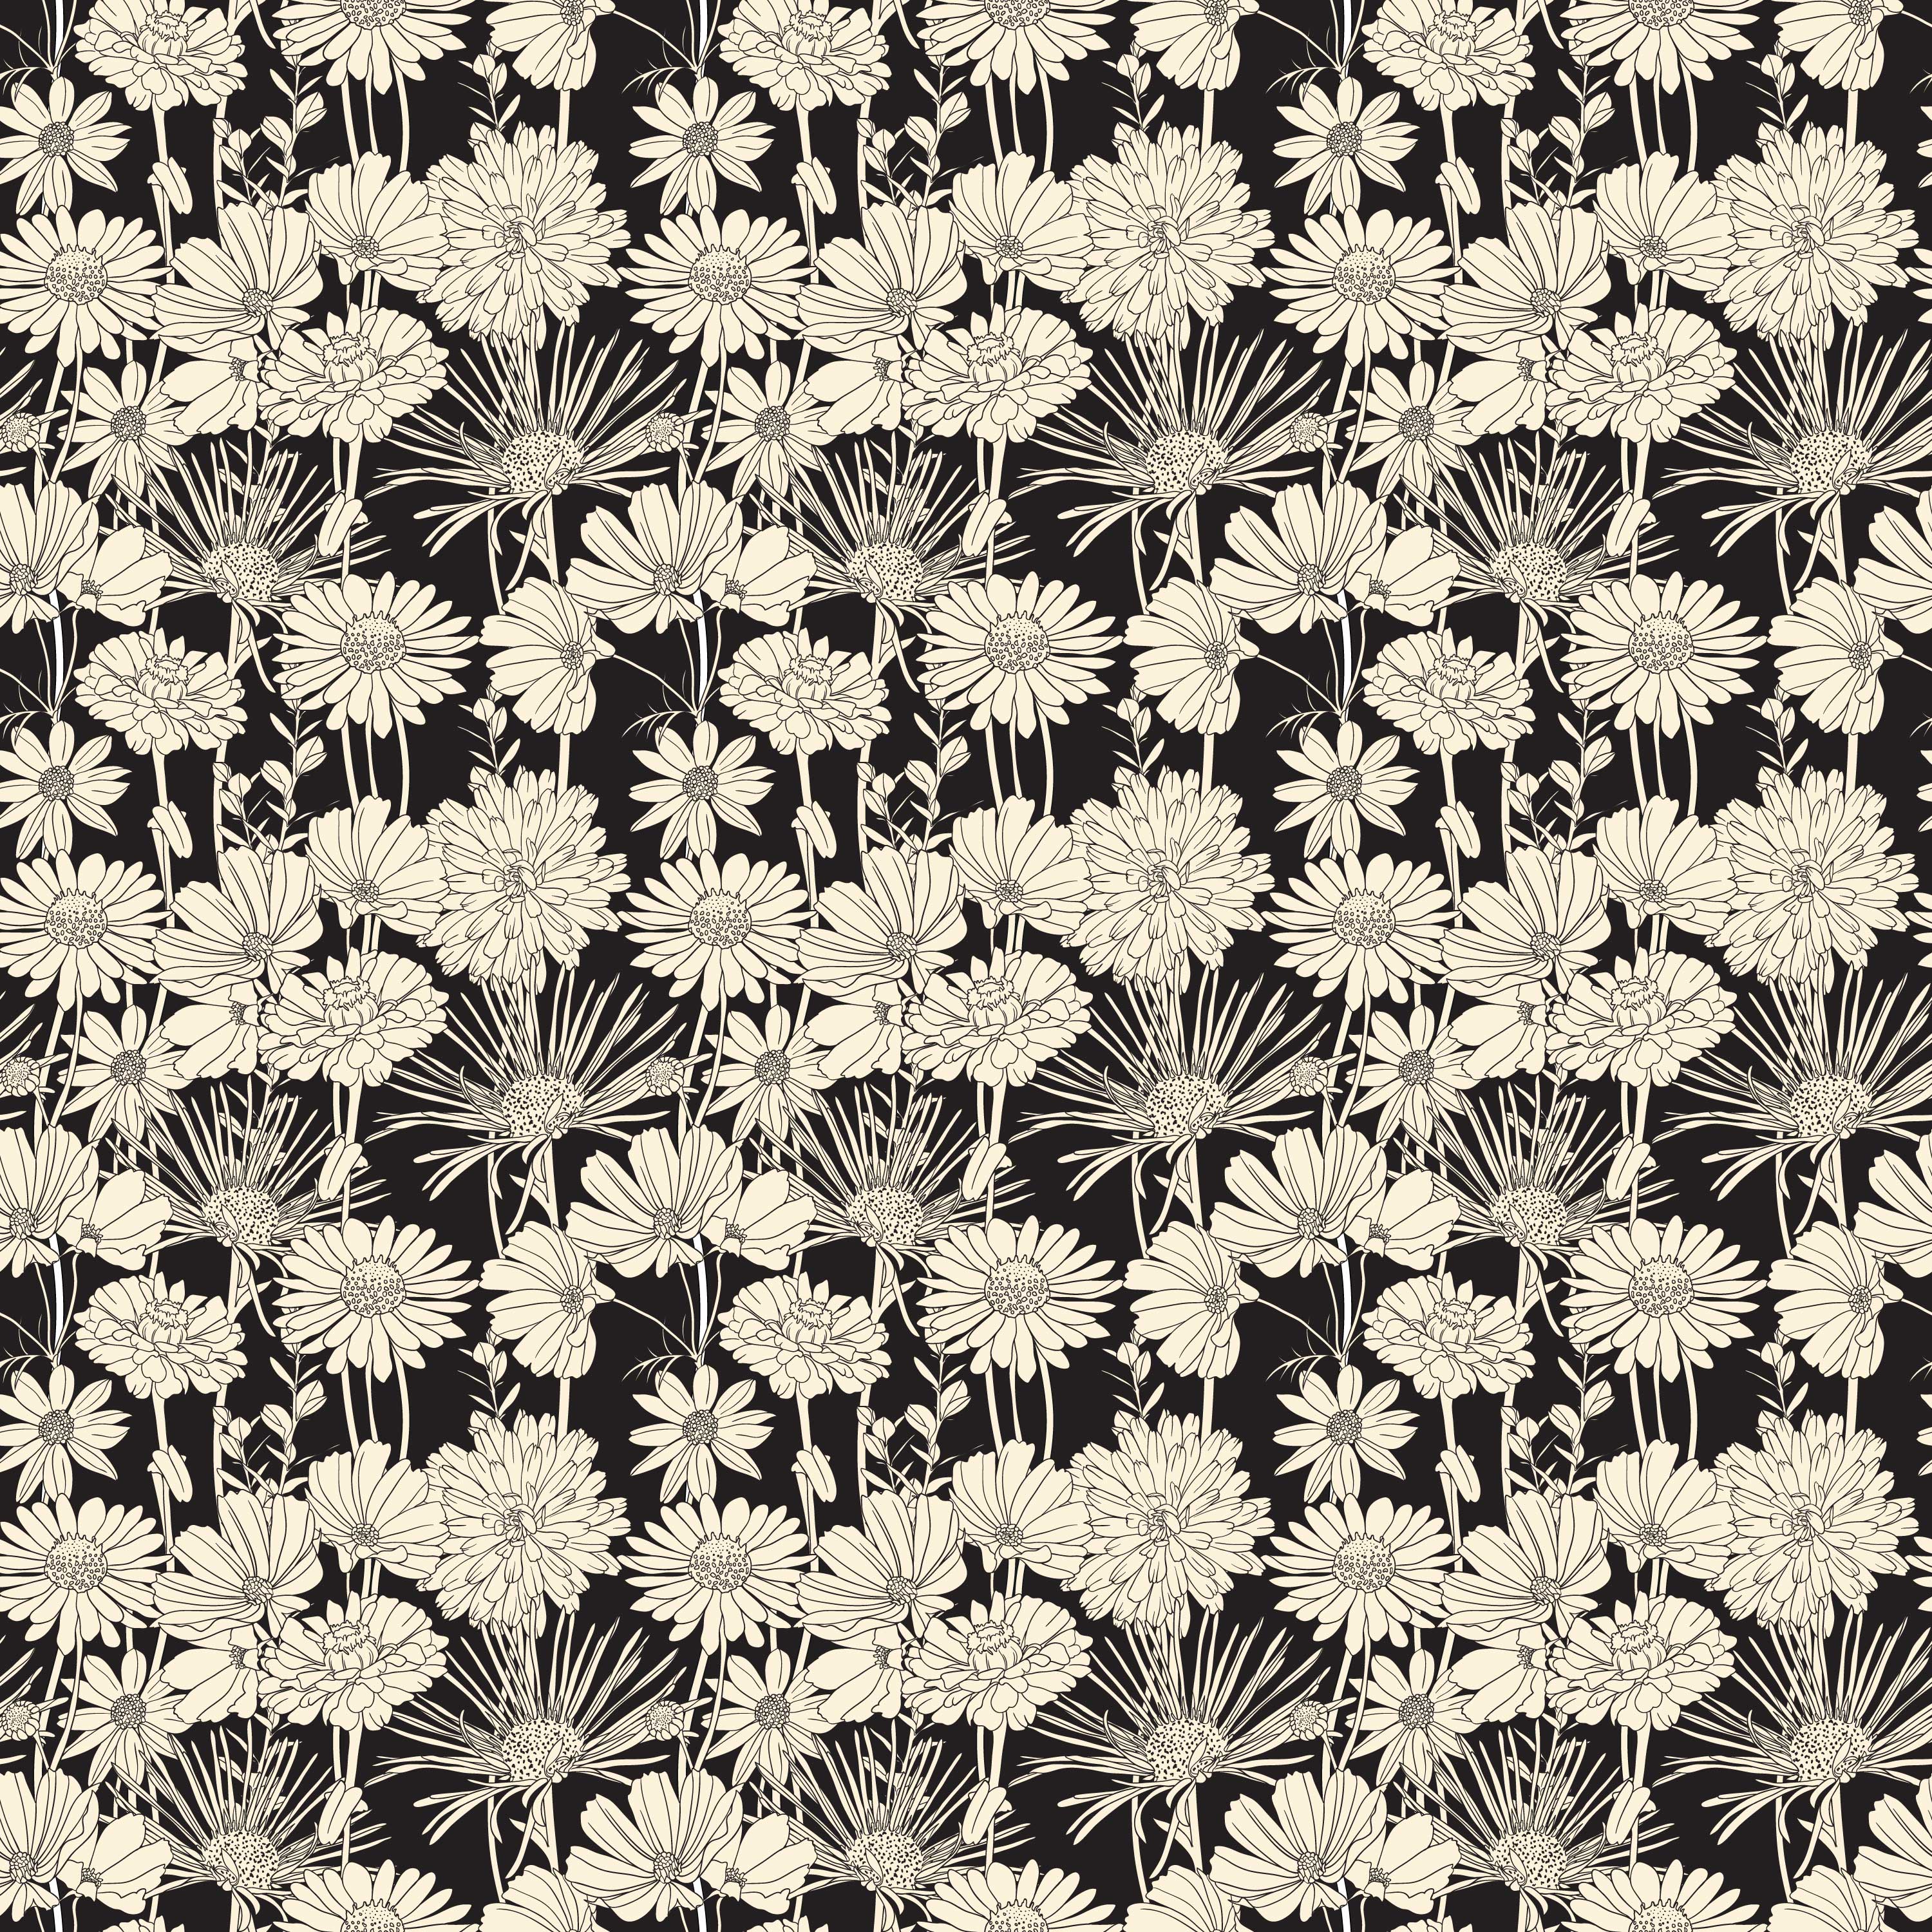 壁紙 背景イラスト 花の模様 柄 パターン No 214 白黒 多種多様